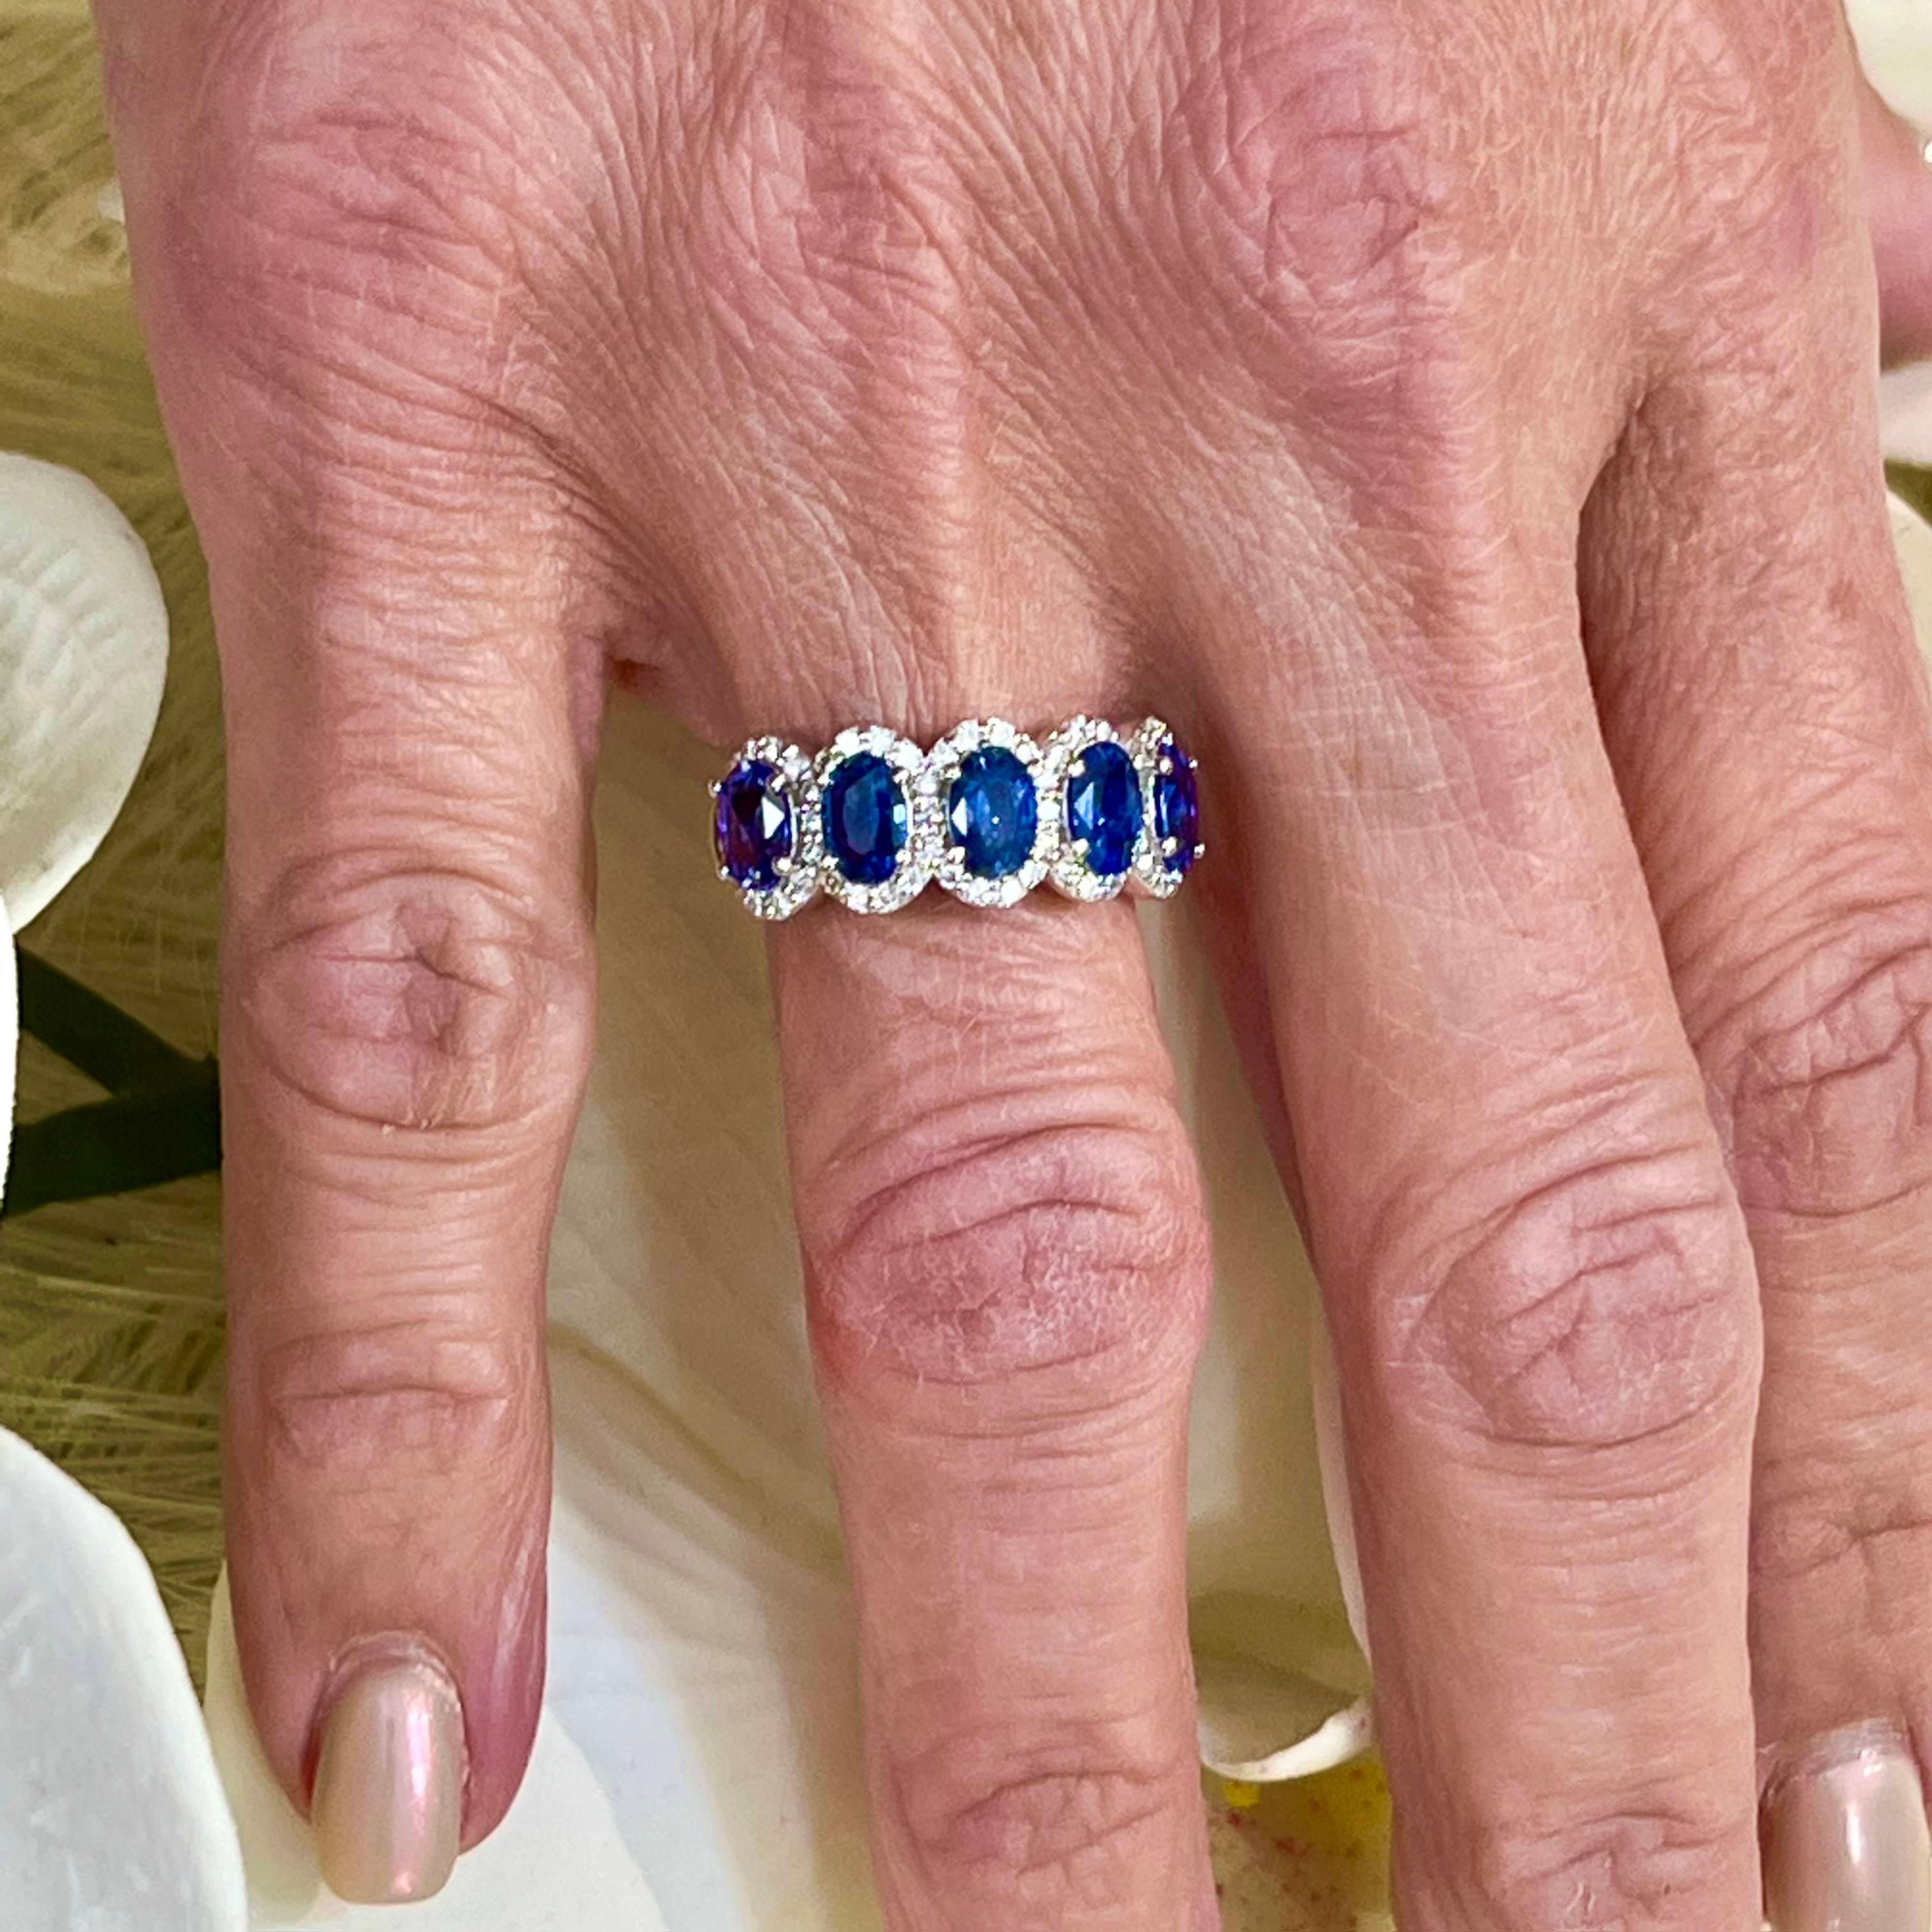 Natürlicher Saphir Diamant Ring Größe 7 14k W Gold 3,07 TCW zertifiziert $5,975 218112

Dies ist ein einzigartiges, maßgeschneidertes, glamouröses Schmuckstück!

Nichts sagt mehr 